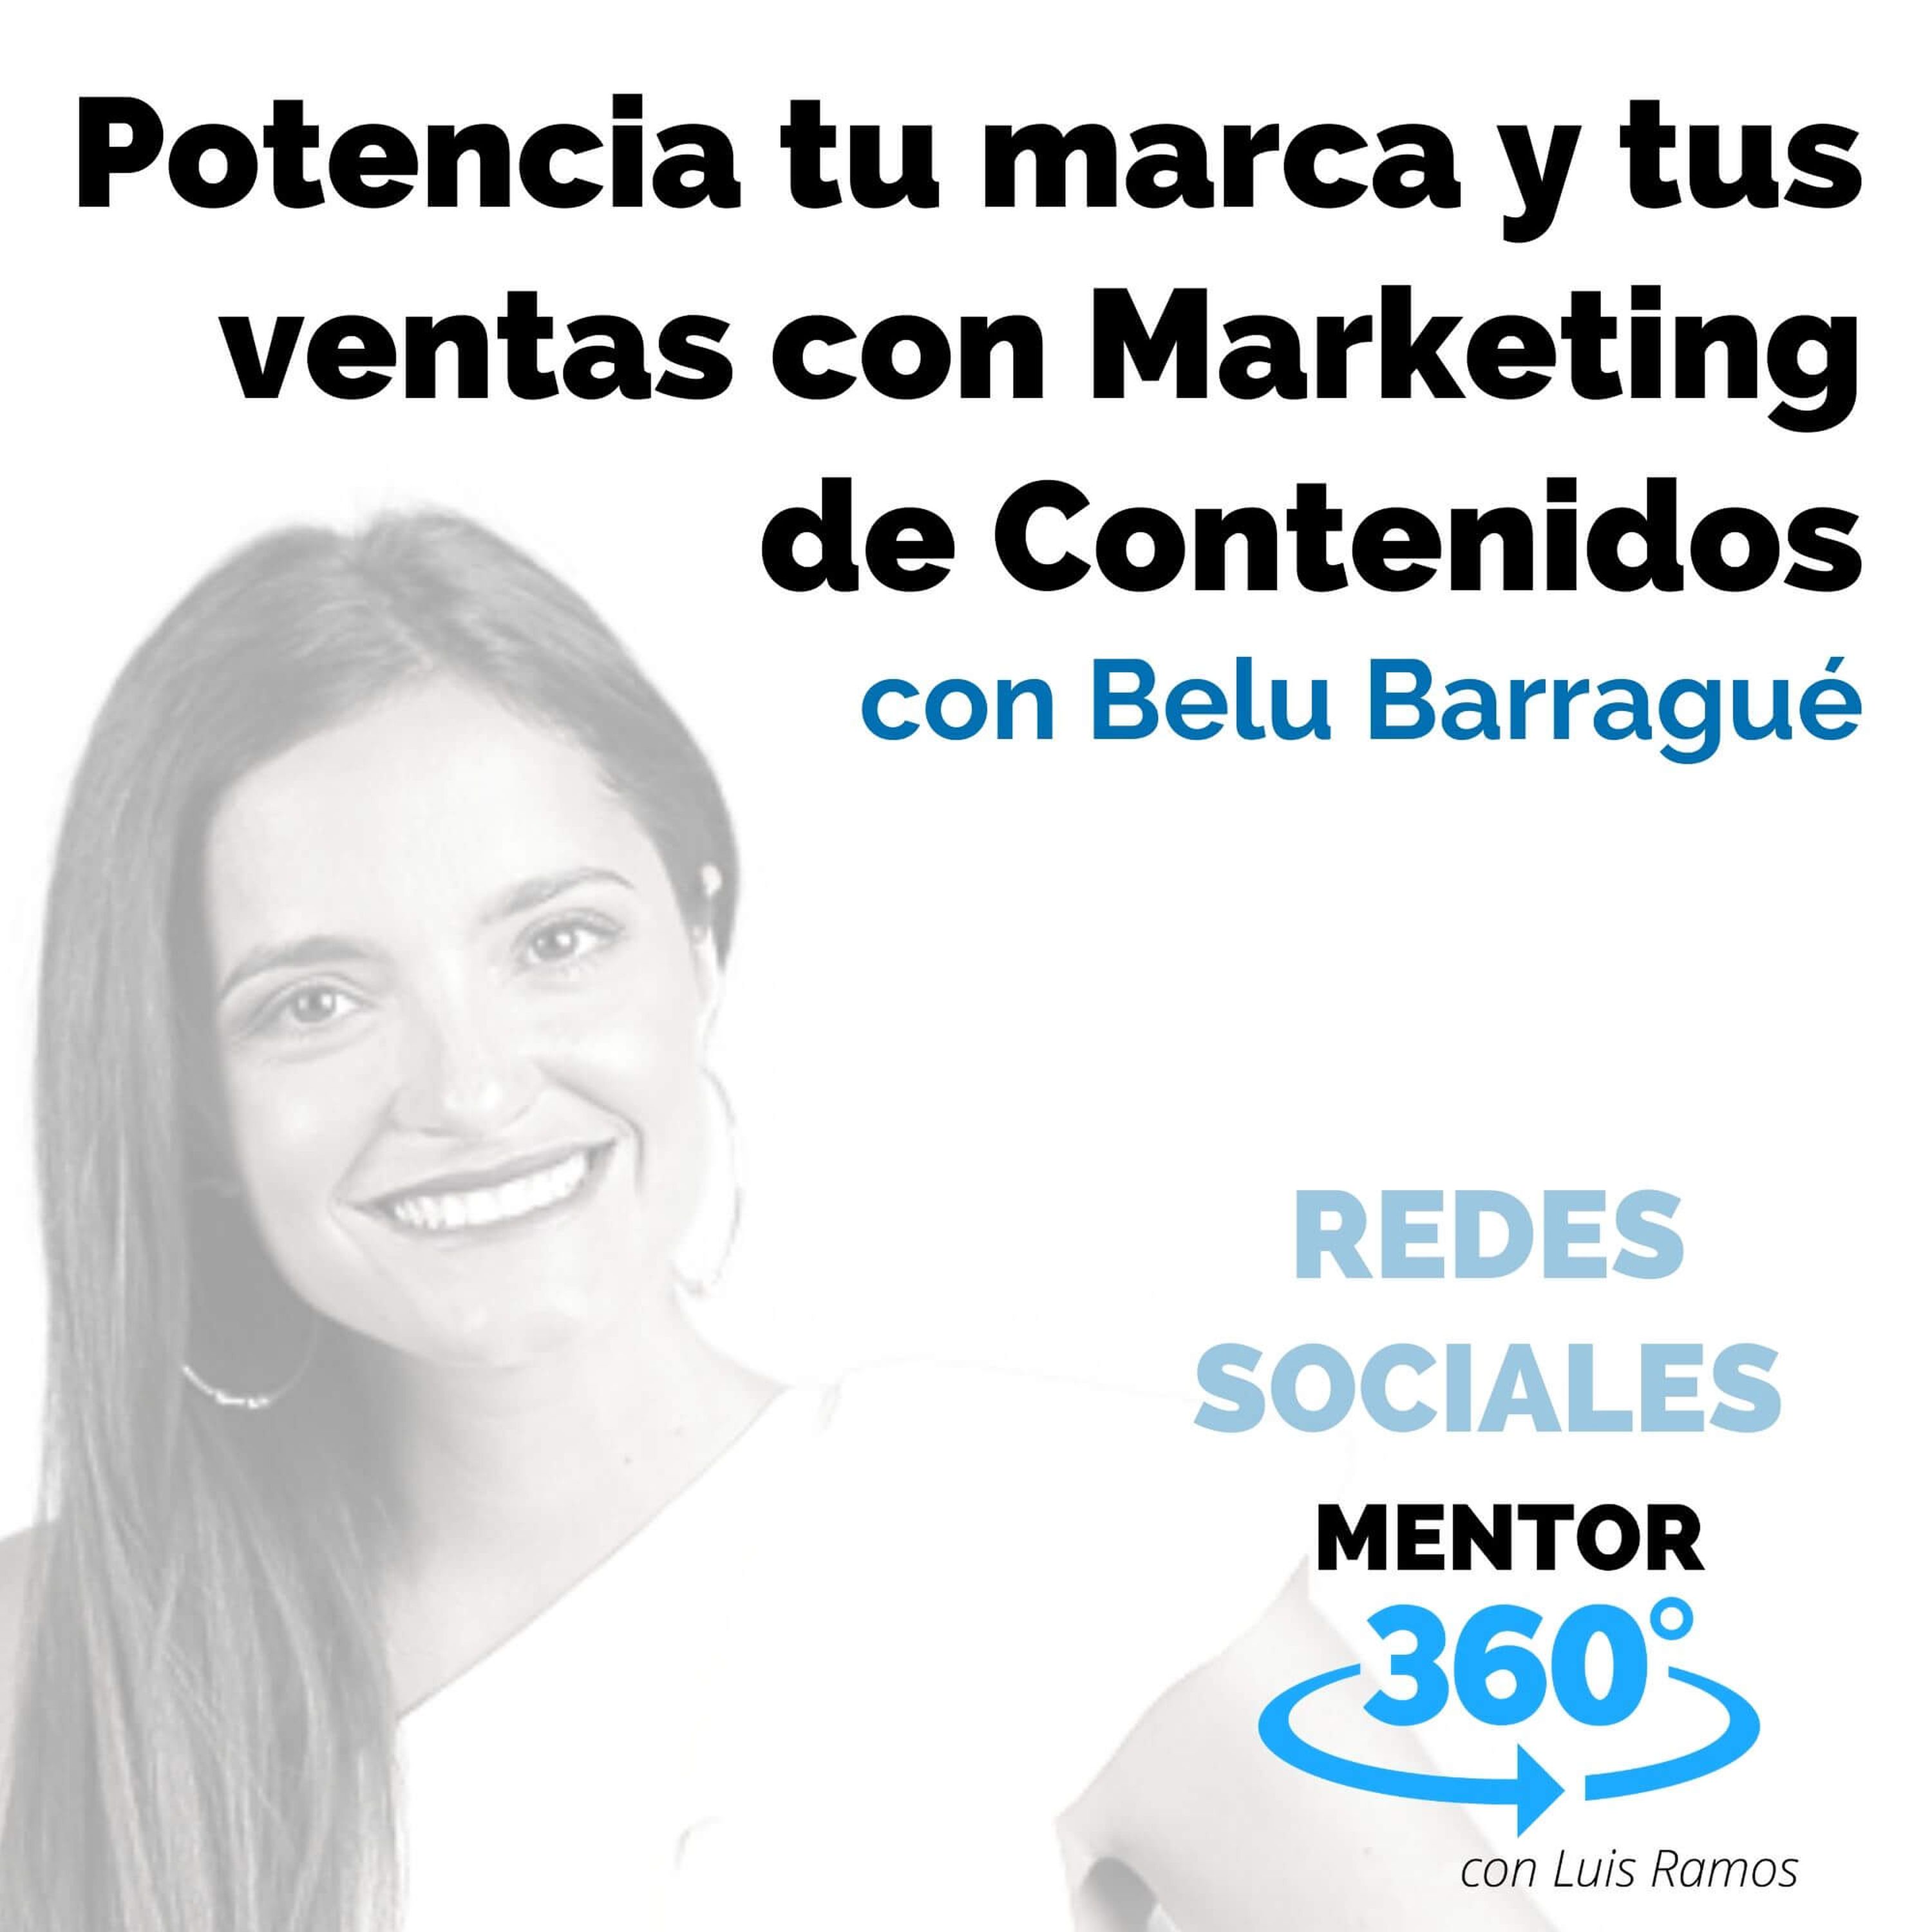 Potencia tu marca y tus ventas con Marketing de Contenidos, con Belu Barragué - REDES SOCIALES - MENTOR360